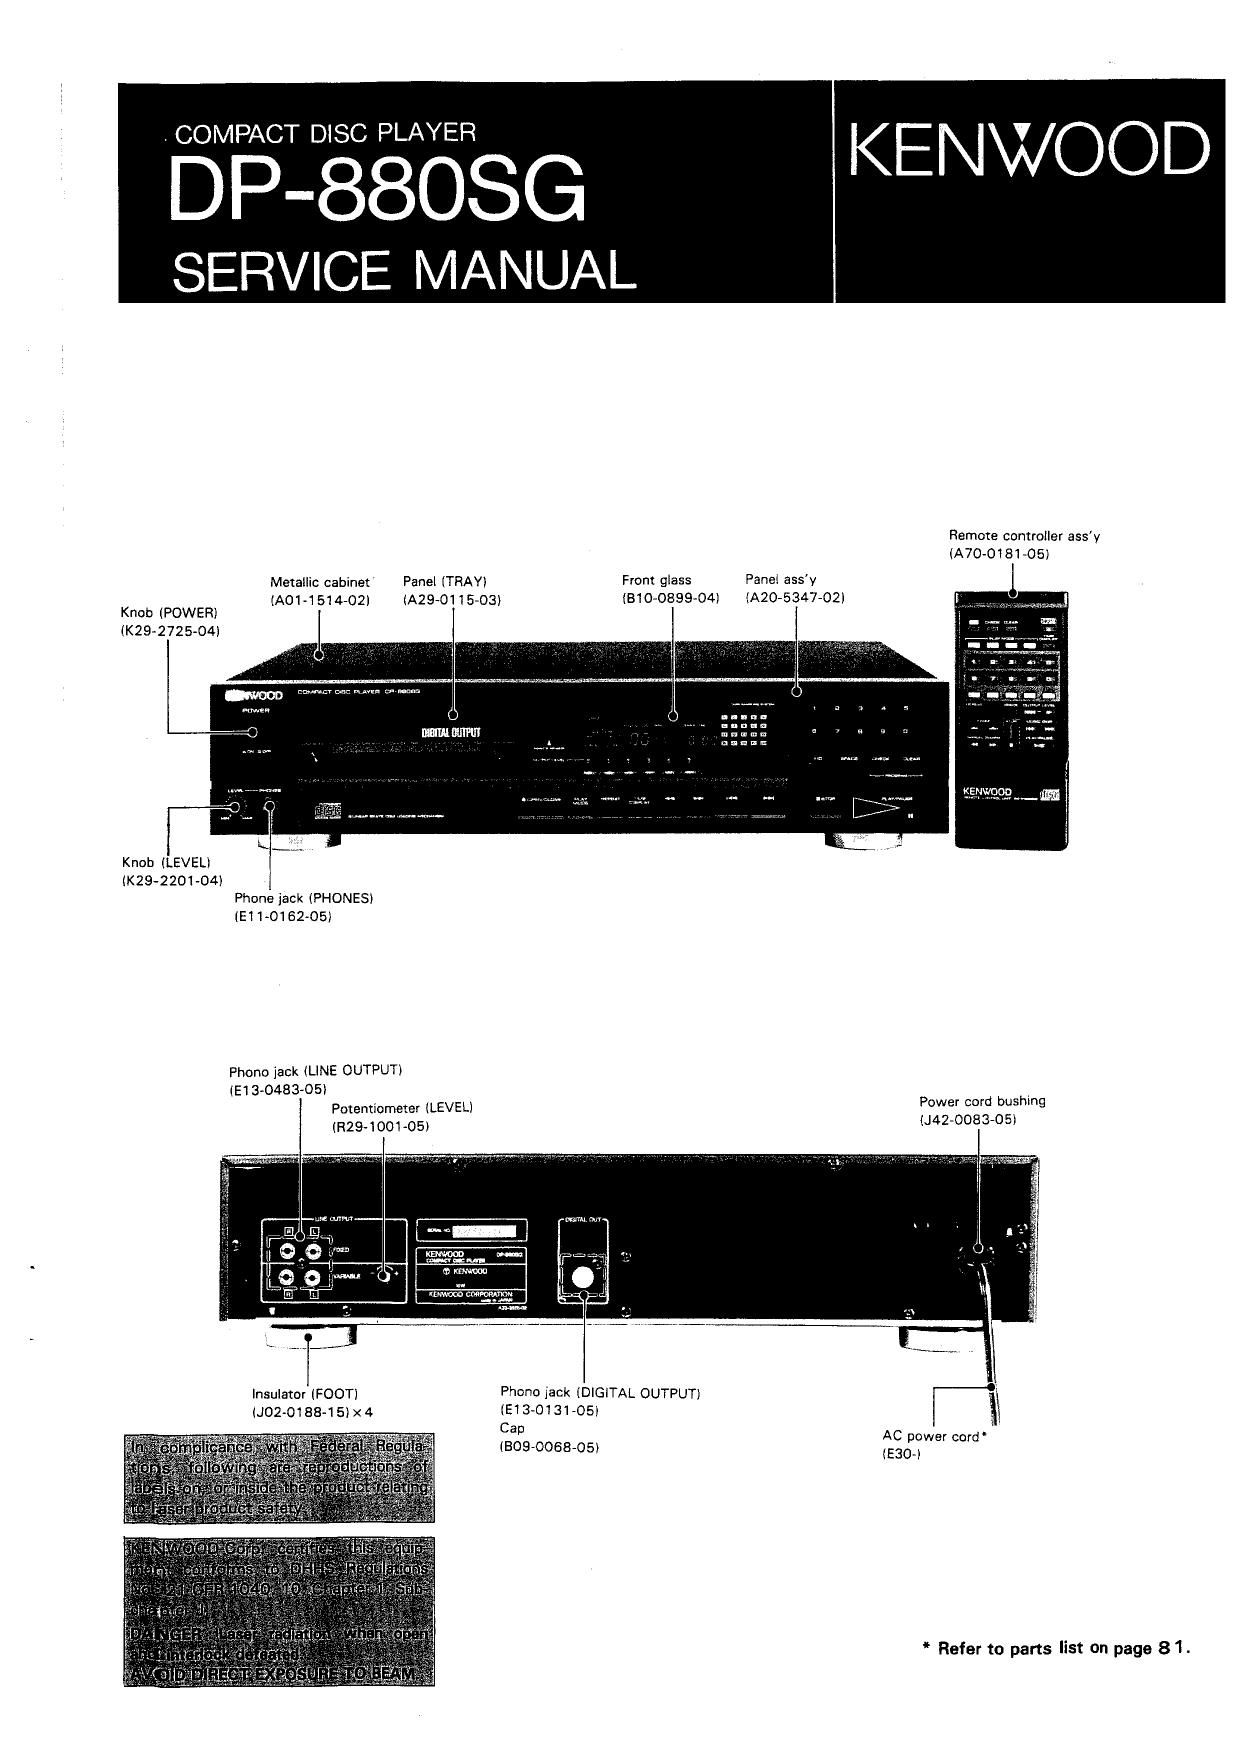 Kenwood DP 880 SG Service Manual